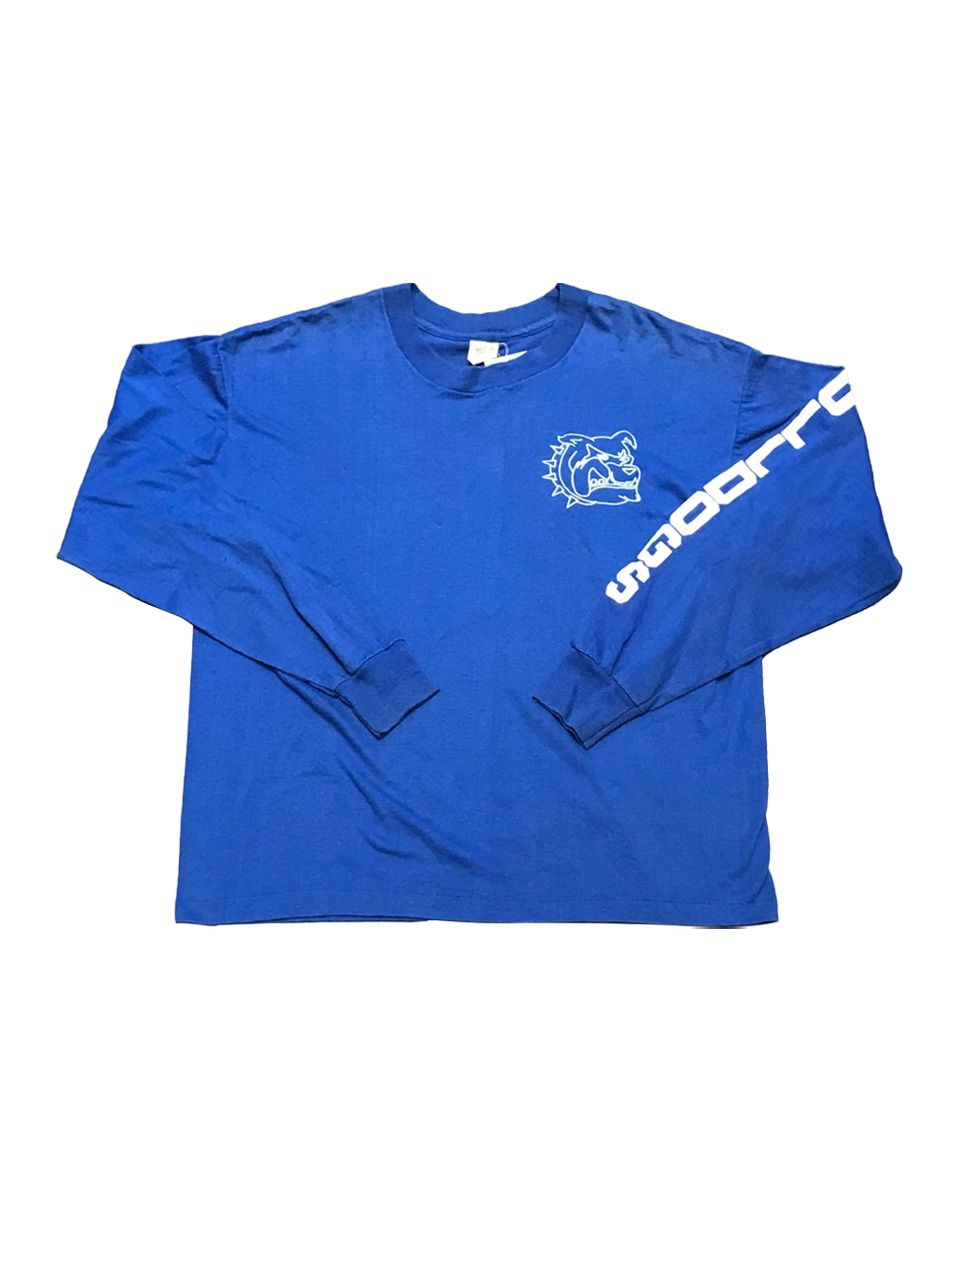 [빈티지] 블루 핏볼 긴팔 티셔츠 - (XL / 2304-A-MM09)